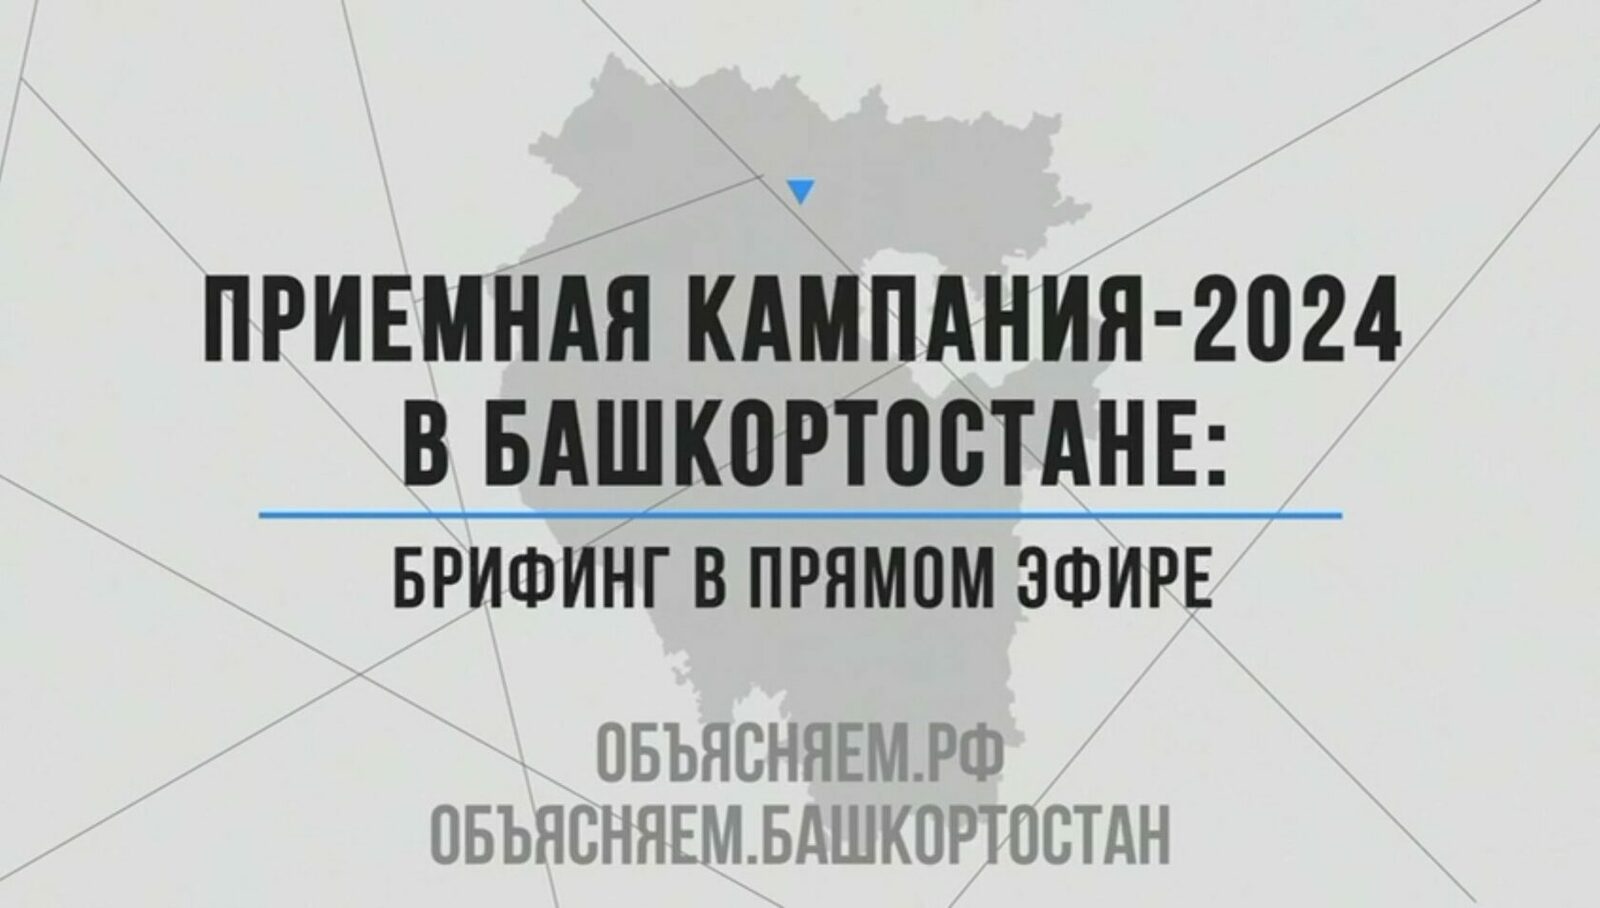 Приемная кампания-2024 в Башкортостане: брифинг в прямом эфире